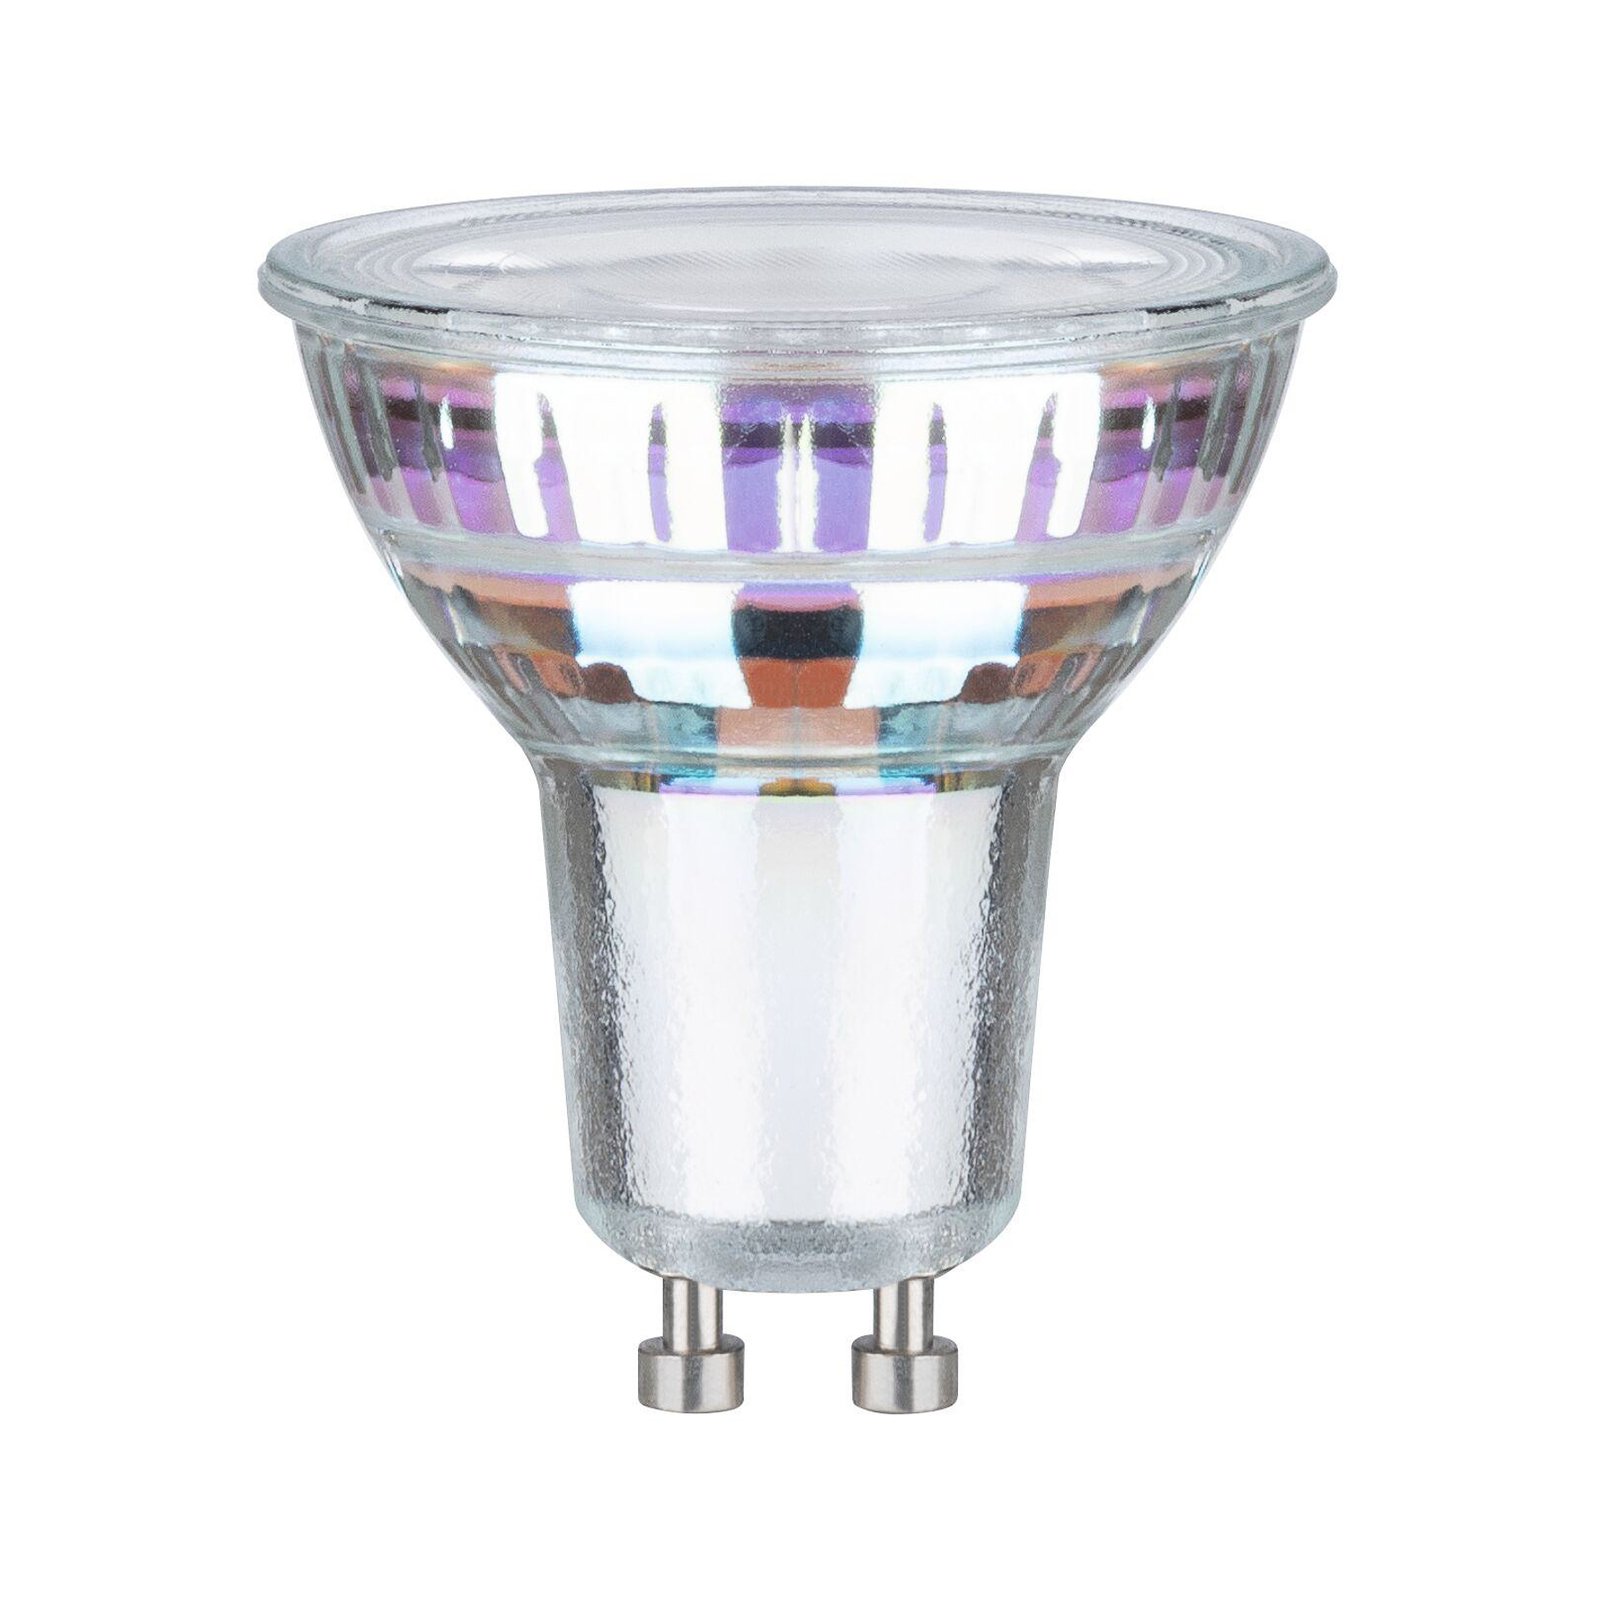 Paulmann LED-reflektor GU10 2,5 W, 3 000 K, 450 lm, 100° 3 enheter